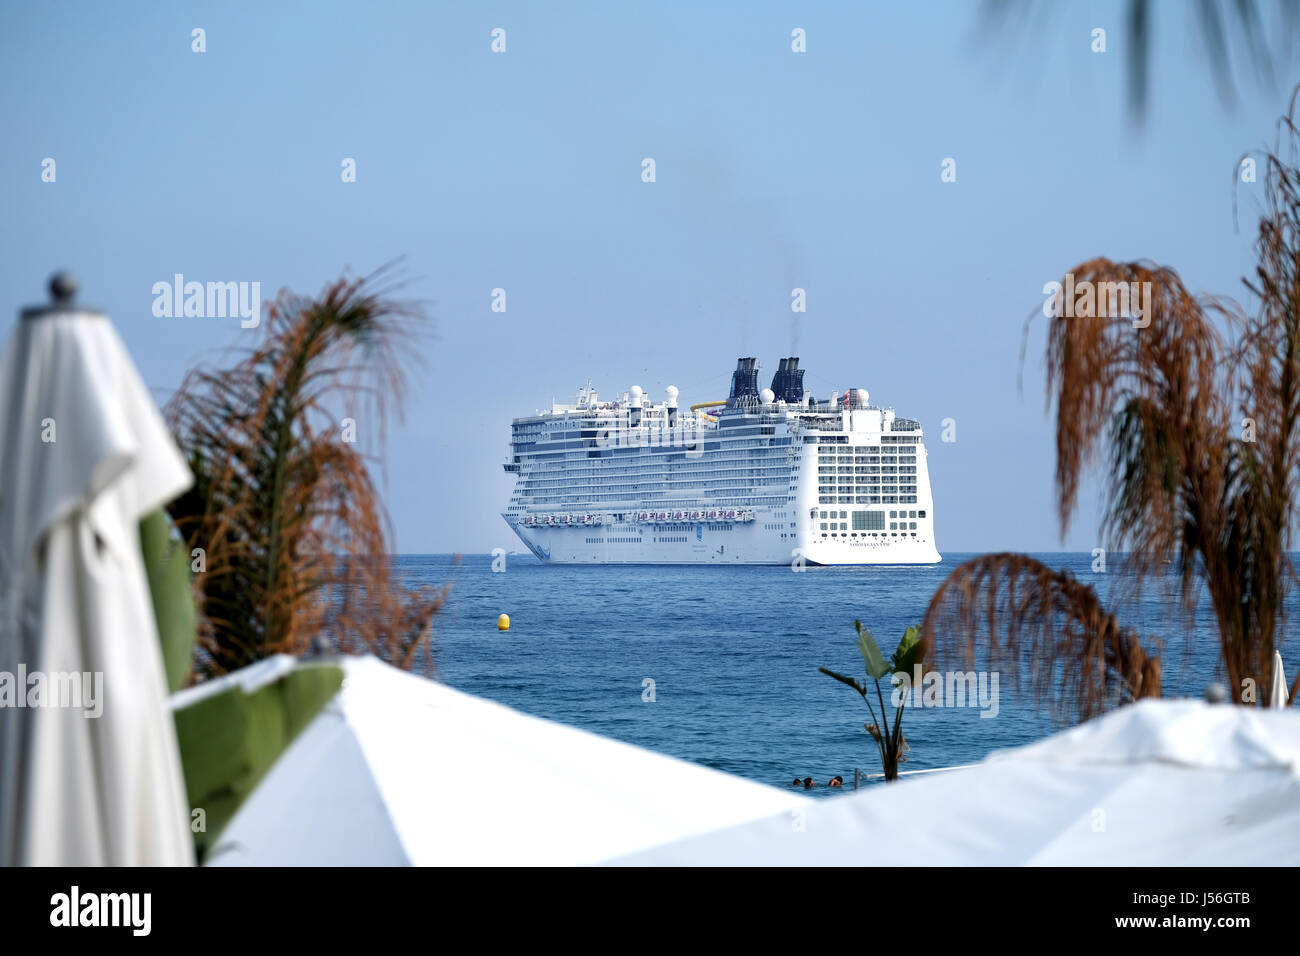 Die Norwegian Epic, einem der größten Kreuzfahrtschiffe der Welt, Cannes, im Süden von Frankreich, wo sie im Rahmen einer Kreuzfahrt besucht hatten. Stockfoto